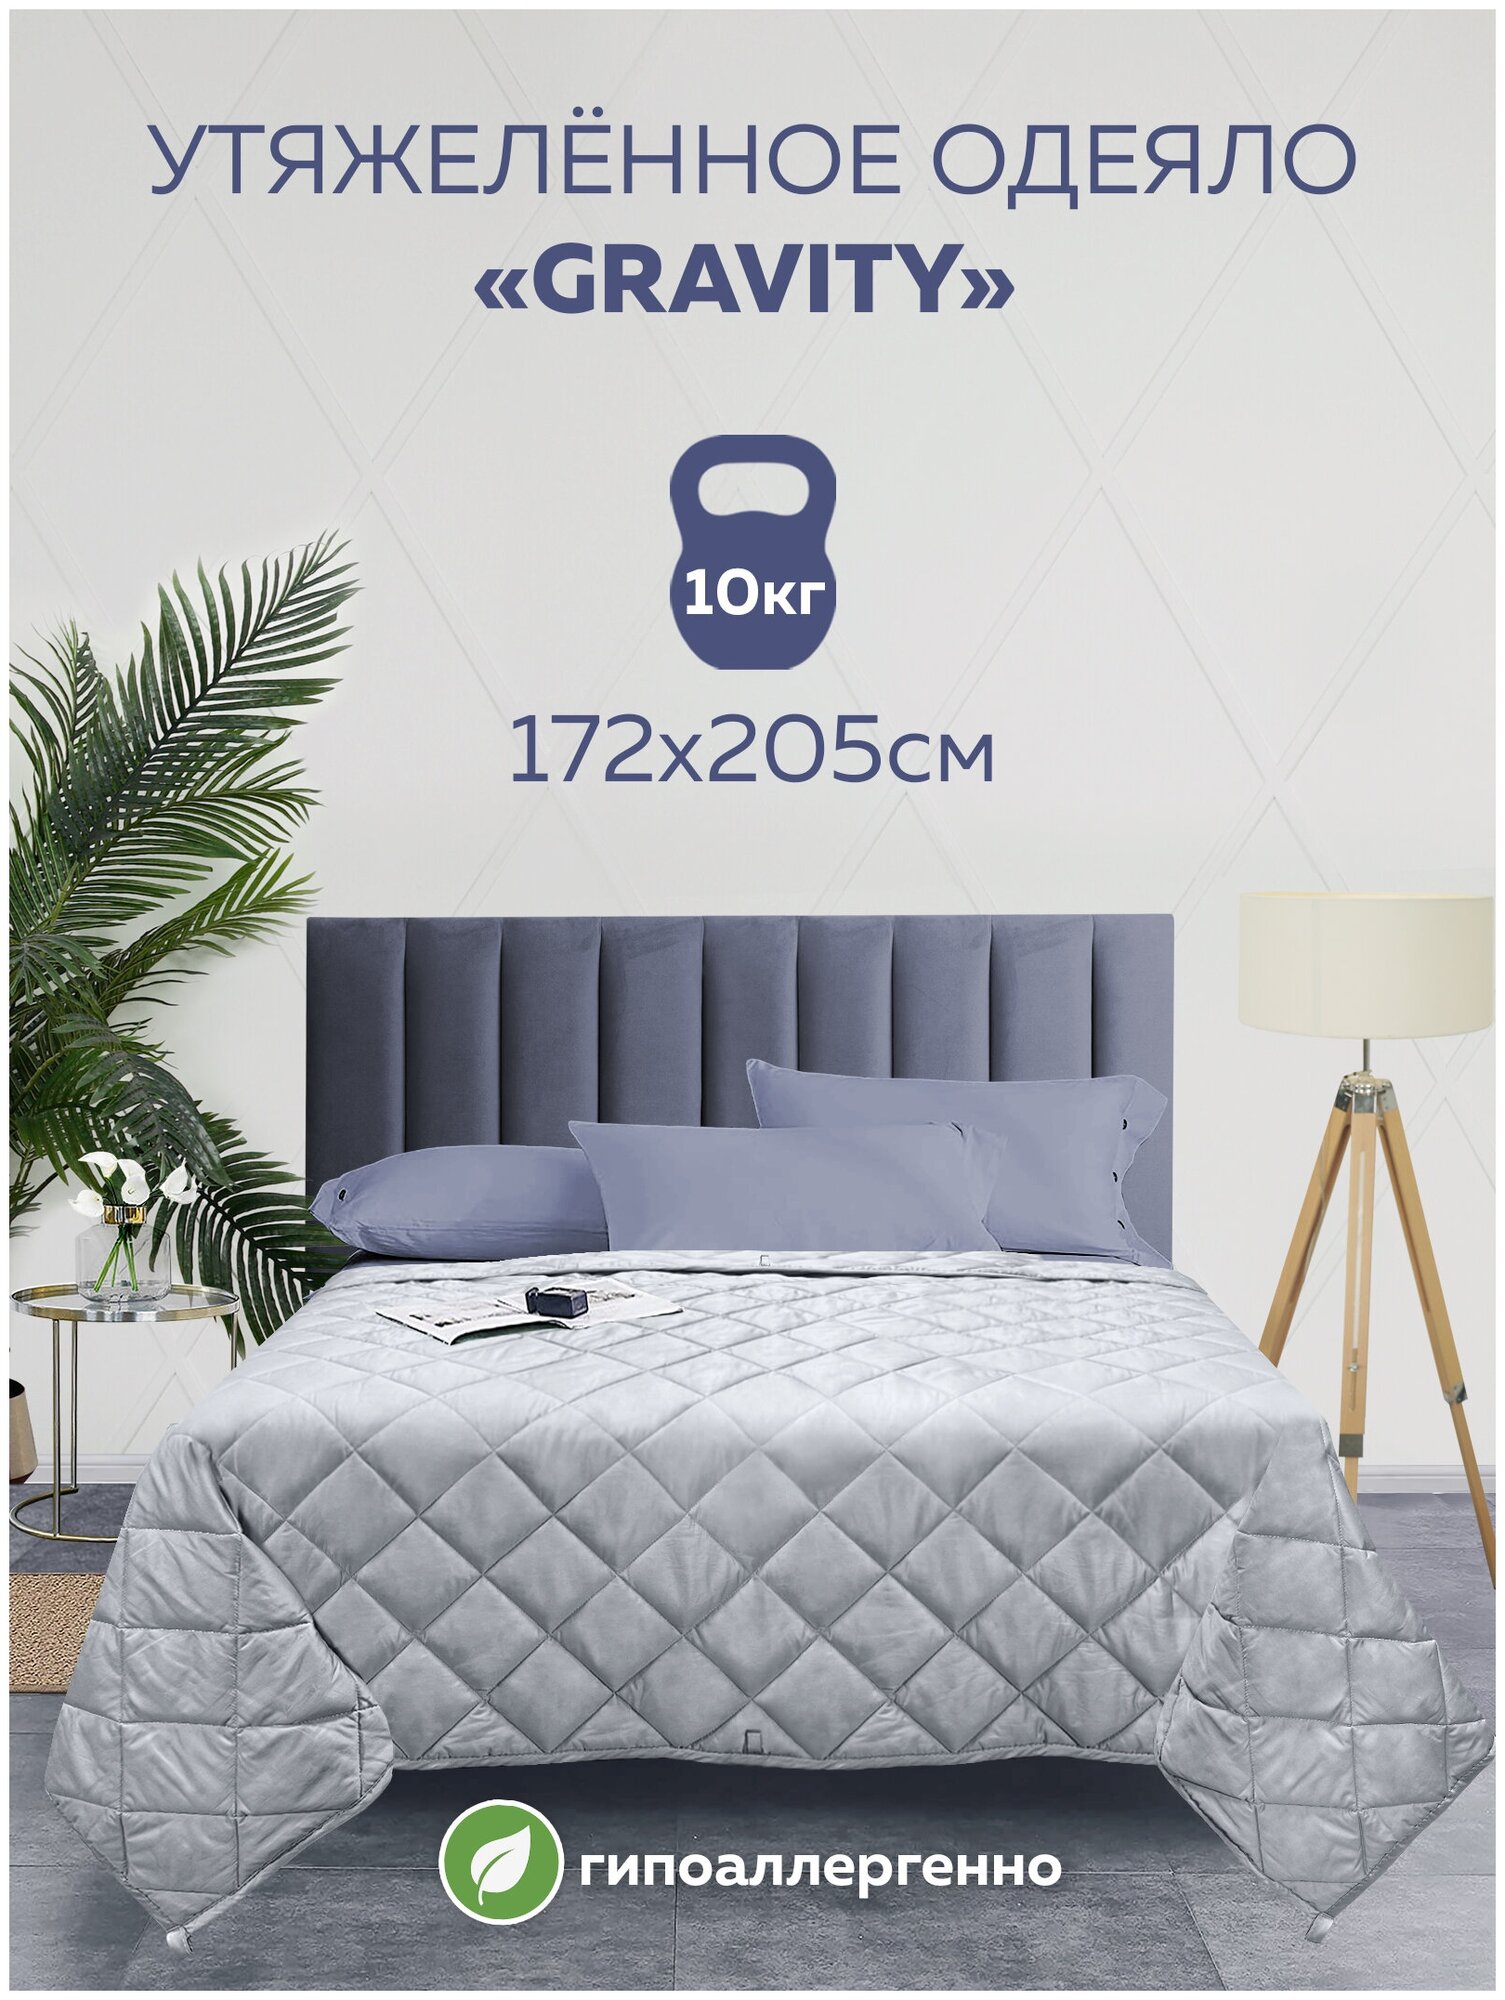 Утяжеленное одеяло Gravity (Гравити) Wellina, 172x205 см. серое 10 кг. / Сенсорное одеяло Gravity 172 x 205 см. 10 кг. (цвет серый)/ Тяжелое одеяло - фотография № 15